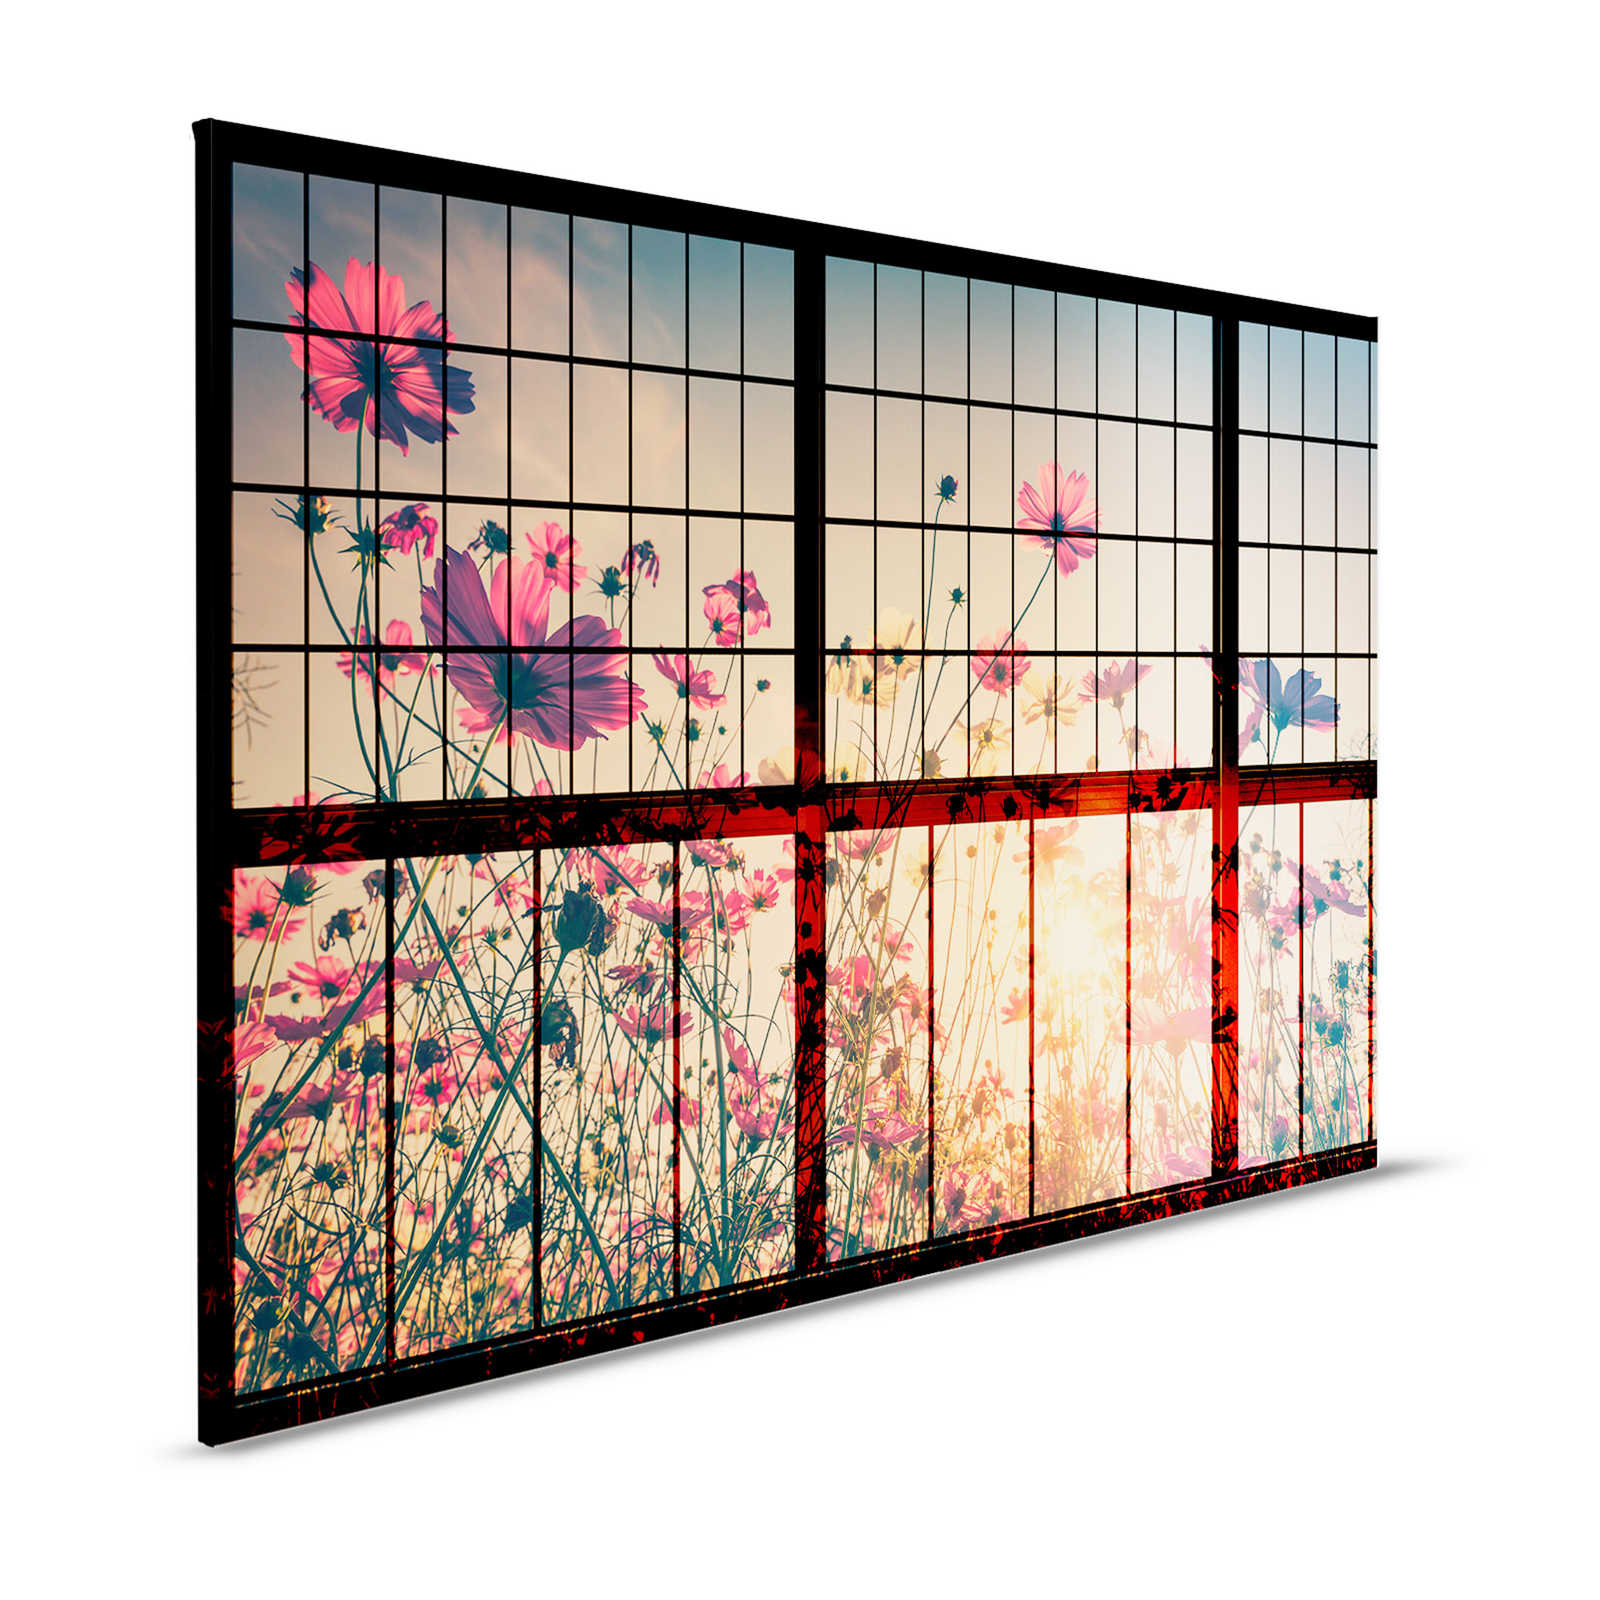 Meadow 1 - Fenêtre à croisillons toile avec pré fleuri - 1,20 m x 0,80 m
